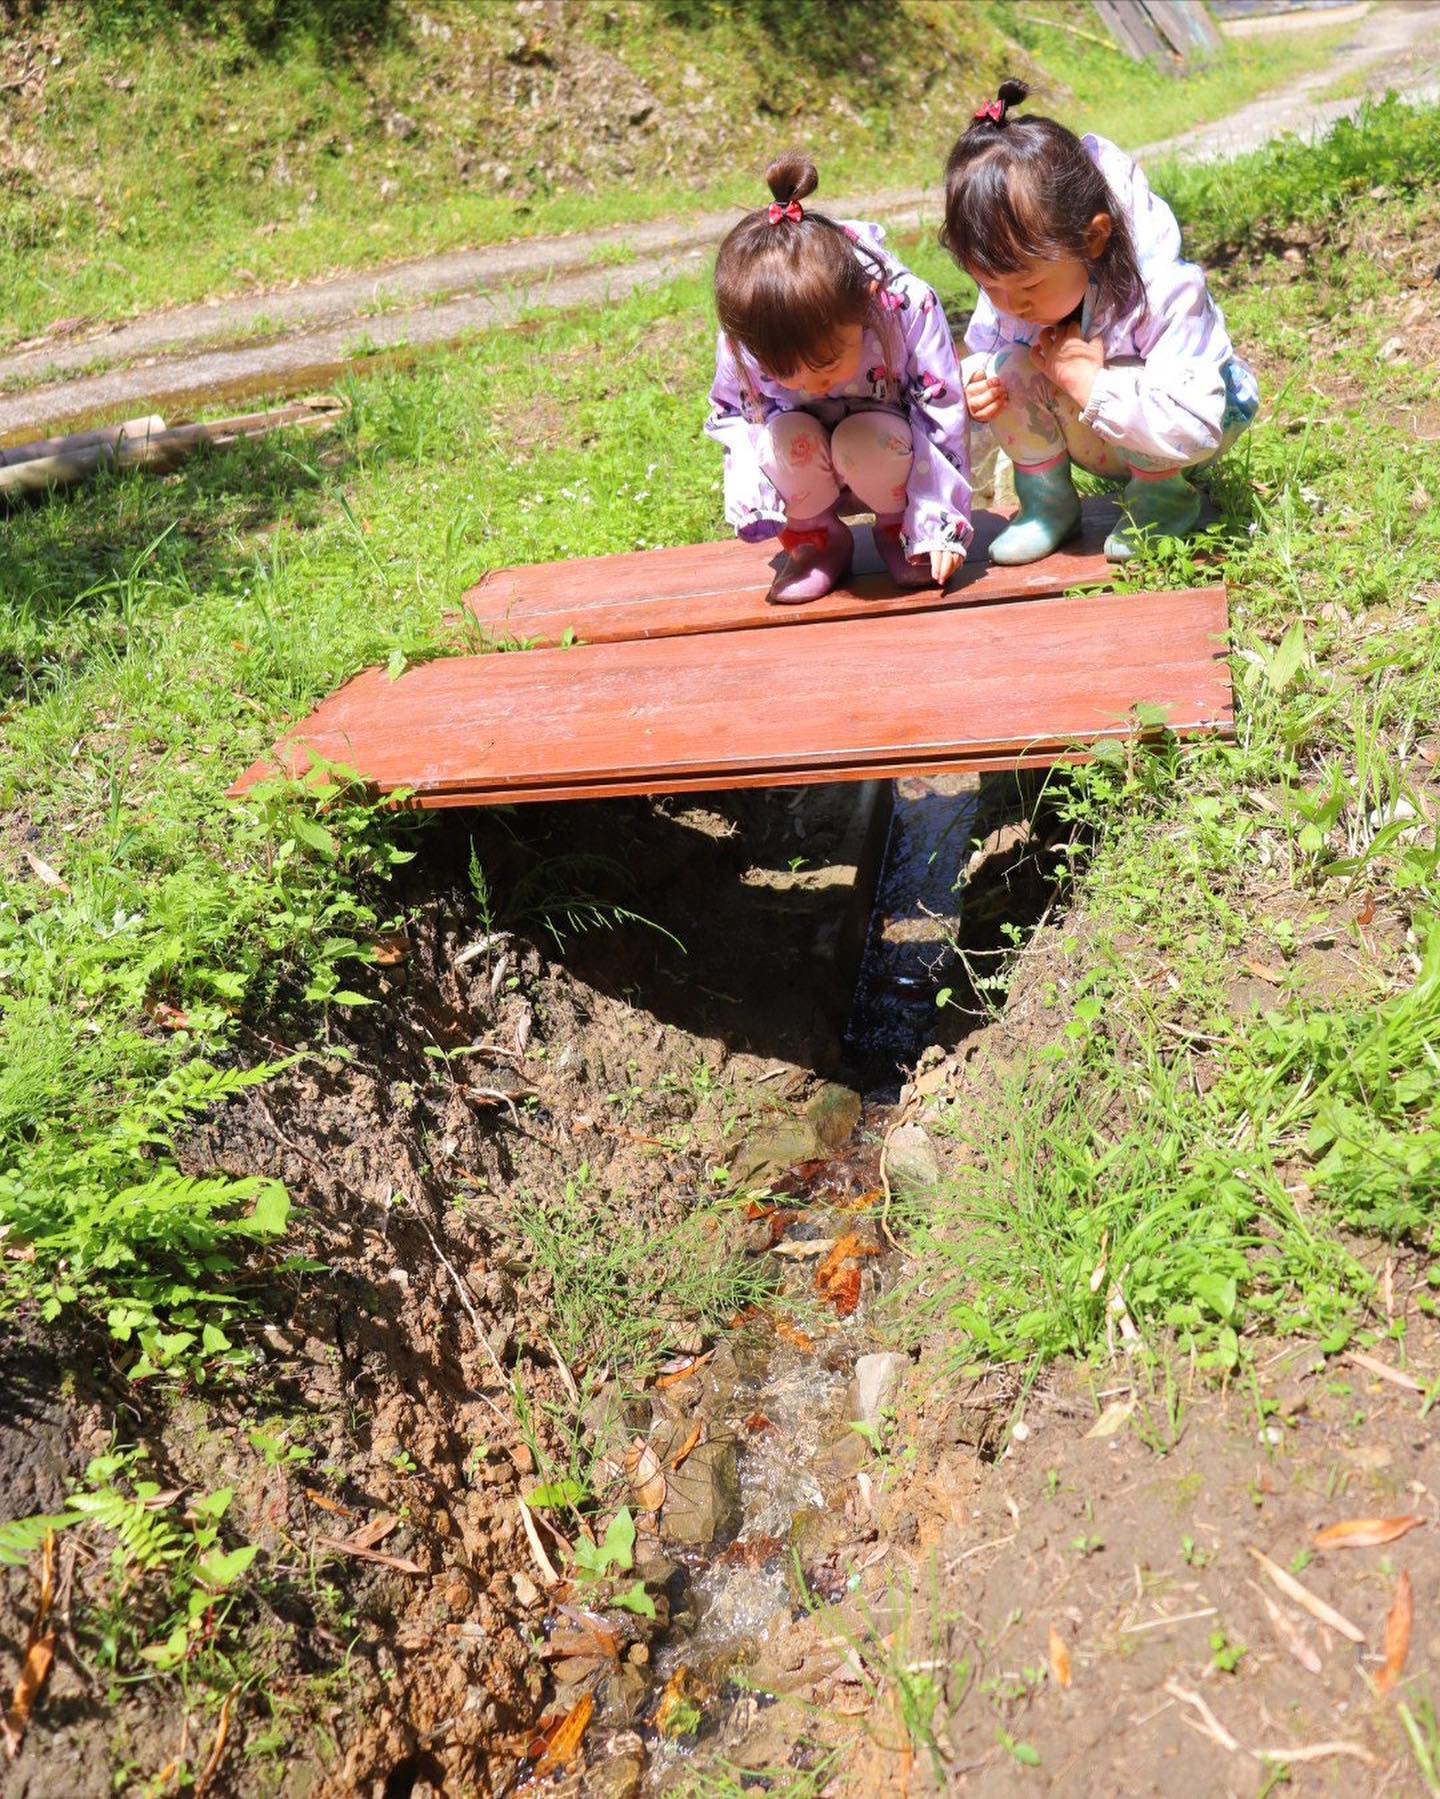 里山ビオトープの水は竹やぶからしみ出て流れ込んでいますそんな水路を渡る小さい橋がお気に入りの双子かわええ🧒🏻🏻キレイな水にたくさんの生きものいっぱい遊んで学んでおっきくなーれ！#双子 #twins #かわいい #親バカ部 #里山 #竹林 #ビオトープ #自然 #nature #体験 #教育 #徳島 #阿南 #阿波たけのこ農園 #水路 #水源 #川 #水遊び #橋